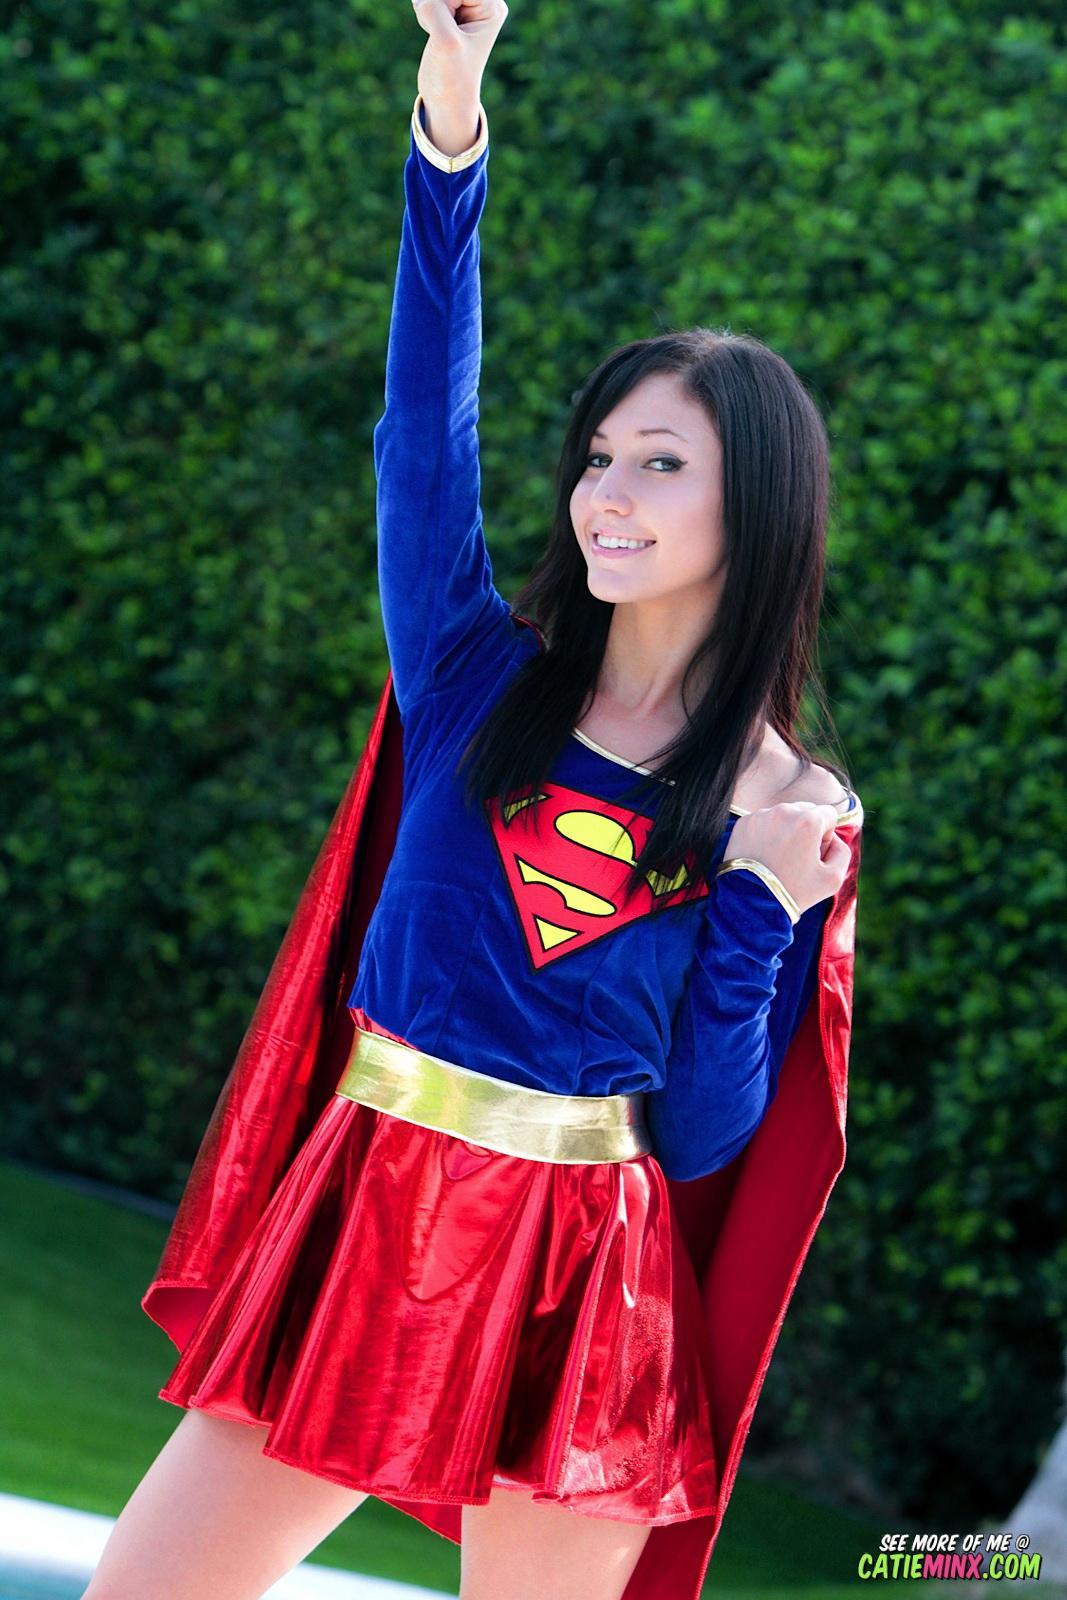 Sanftmütige Streberin Catie Minx enthüllt ihre super-frechen Kräfte als Supergirl
 #53722775